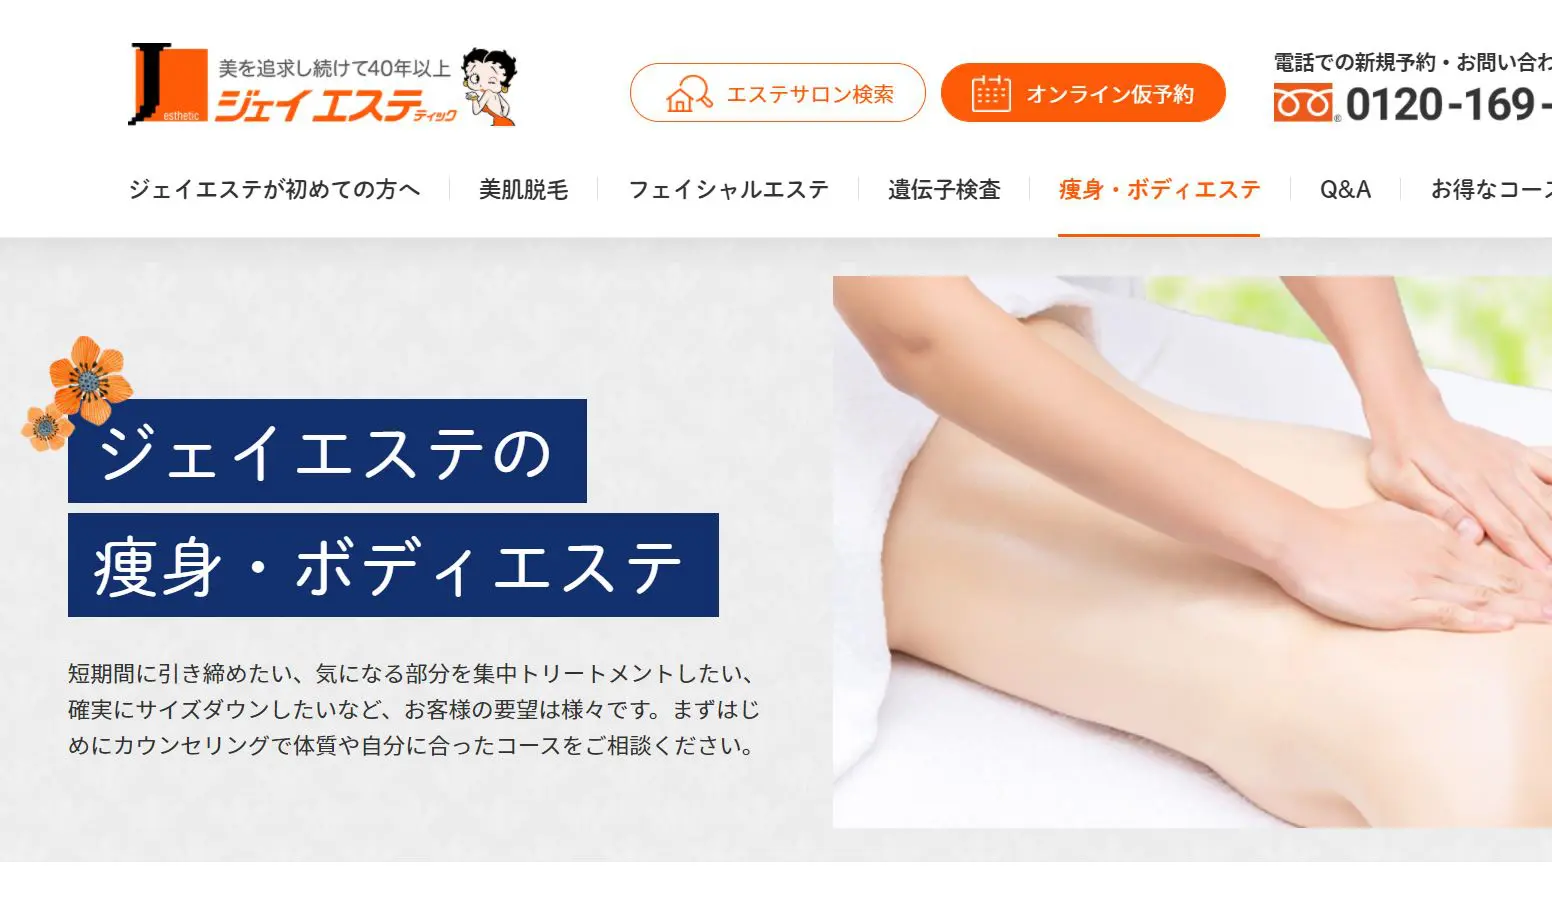 東京都内で人気のおすすめ痩身エステサロン ランキング15選 あなたのinterestへ厳選の情報を レコランク